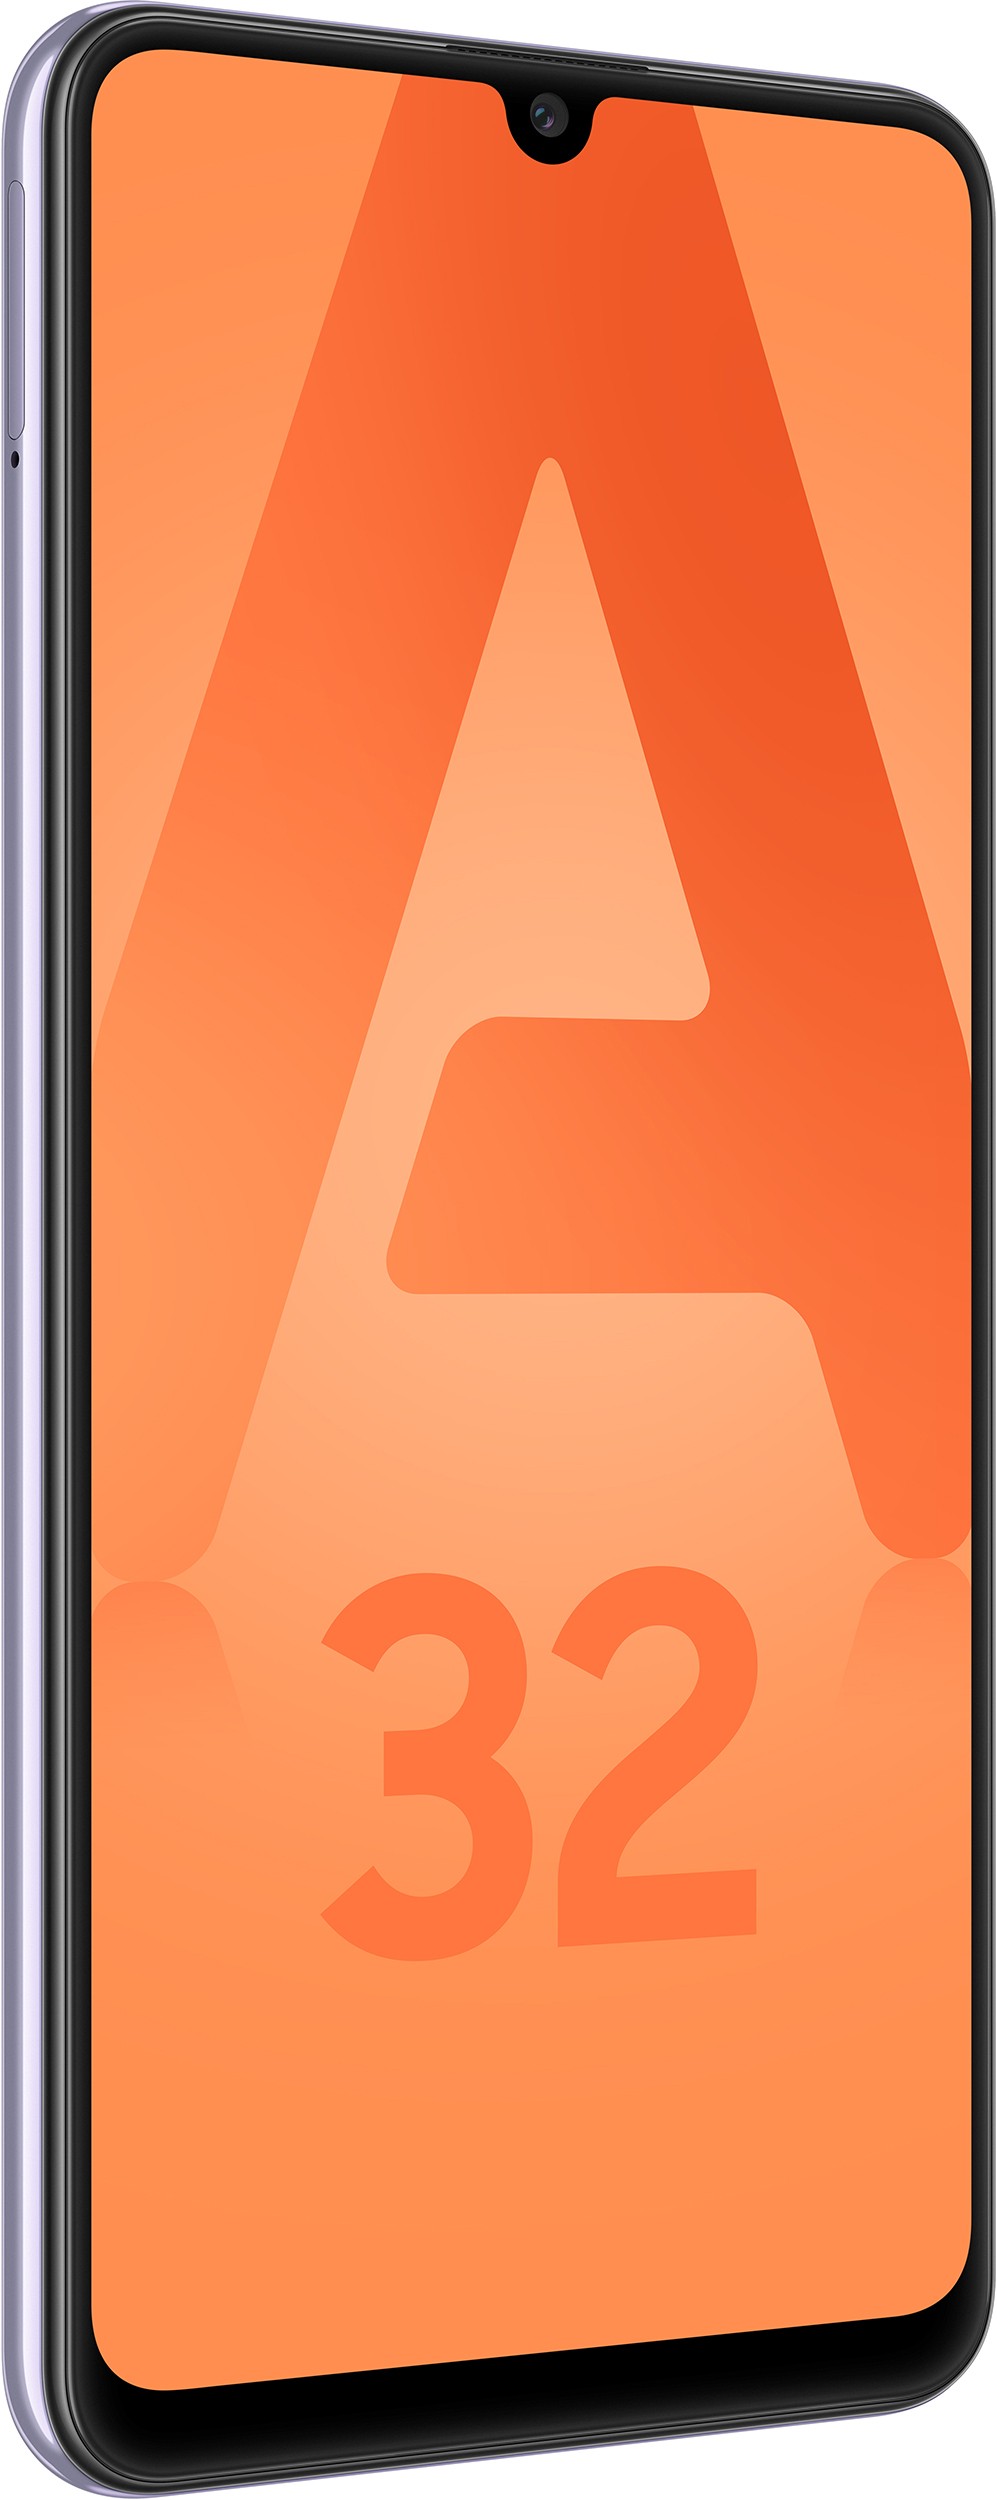 SAMSUNG Smartphone Galaxy A32 128Go Violet